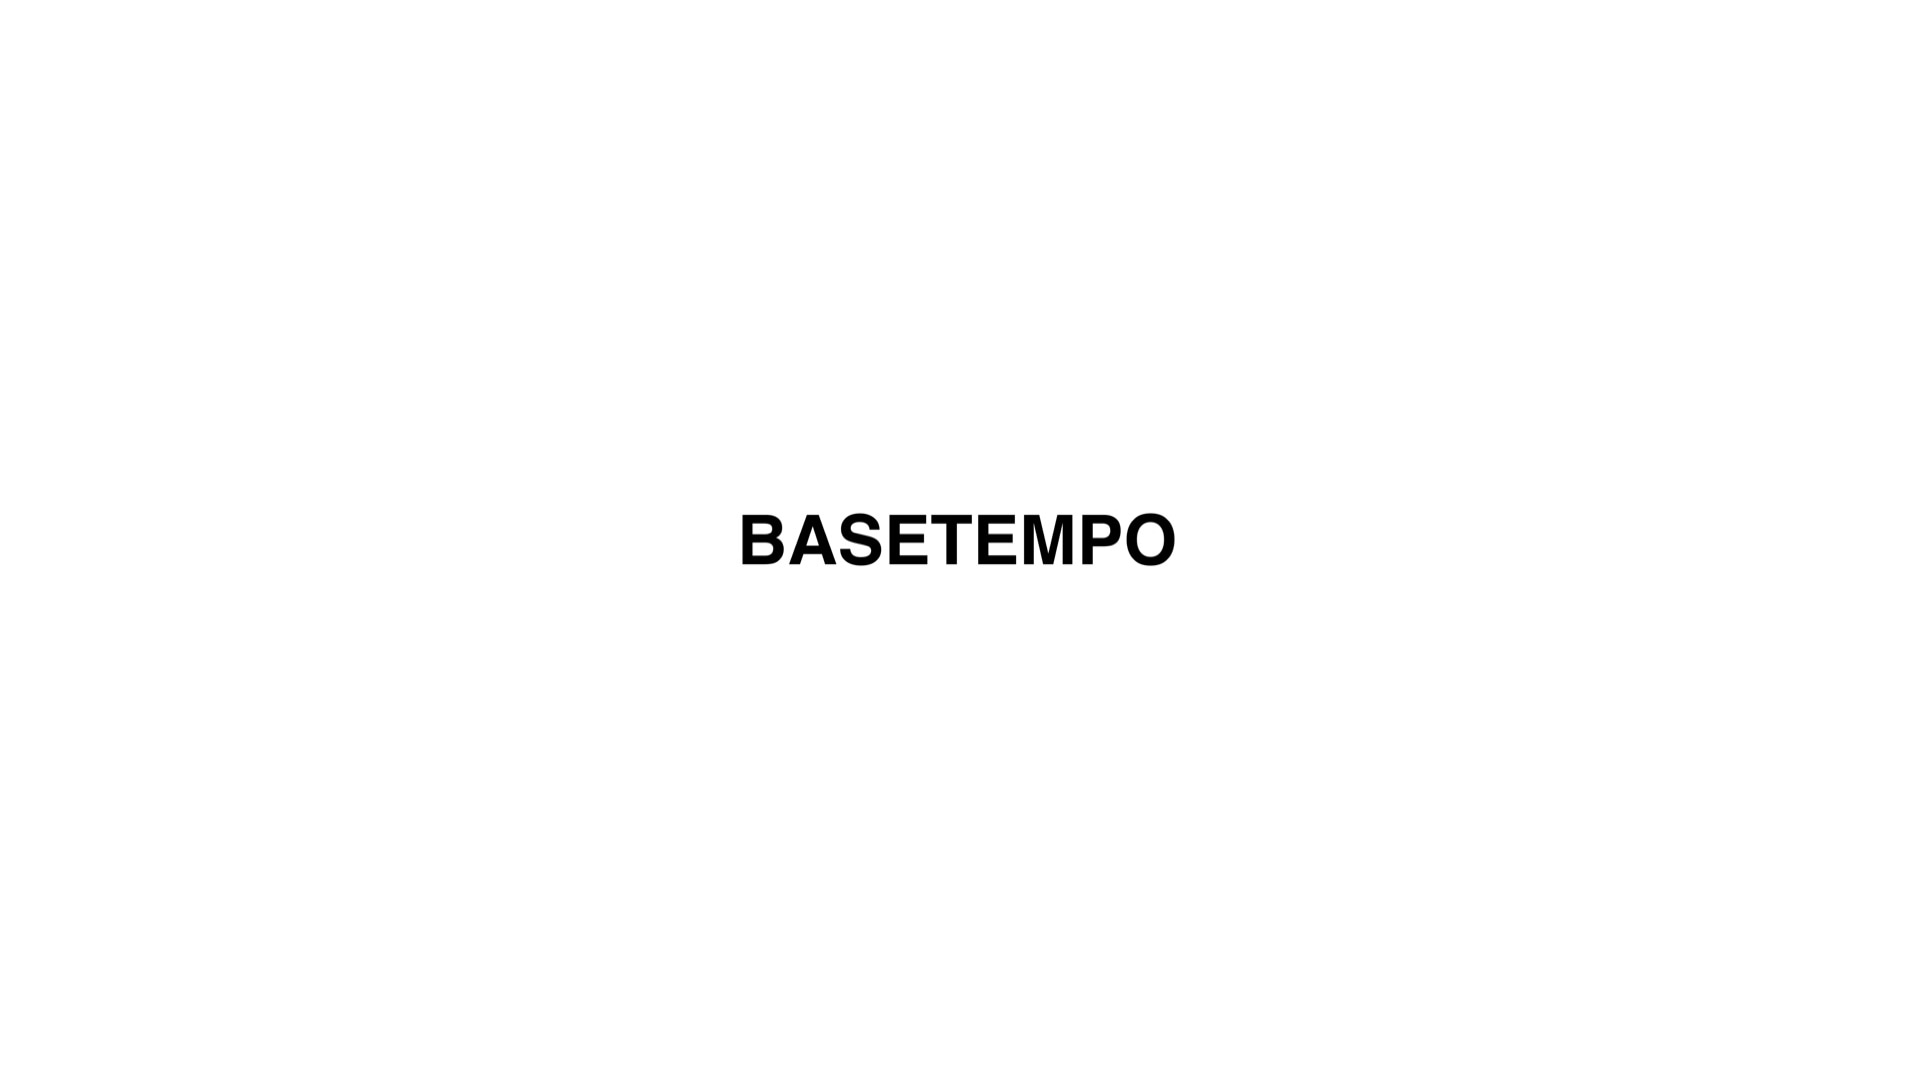 BASETEMPO